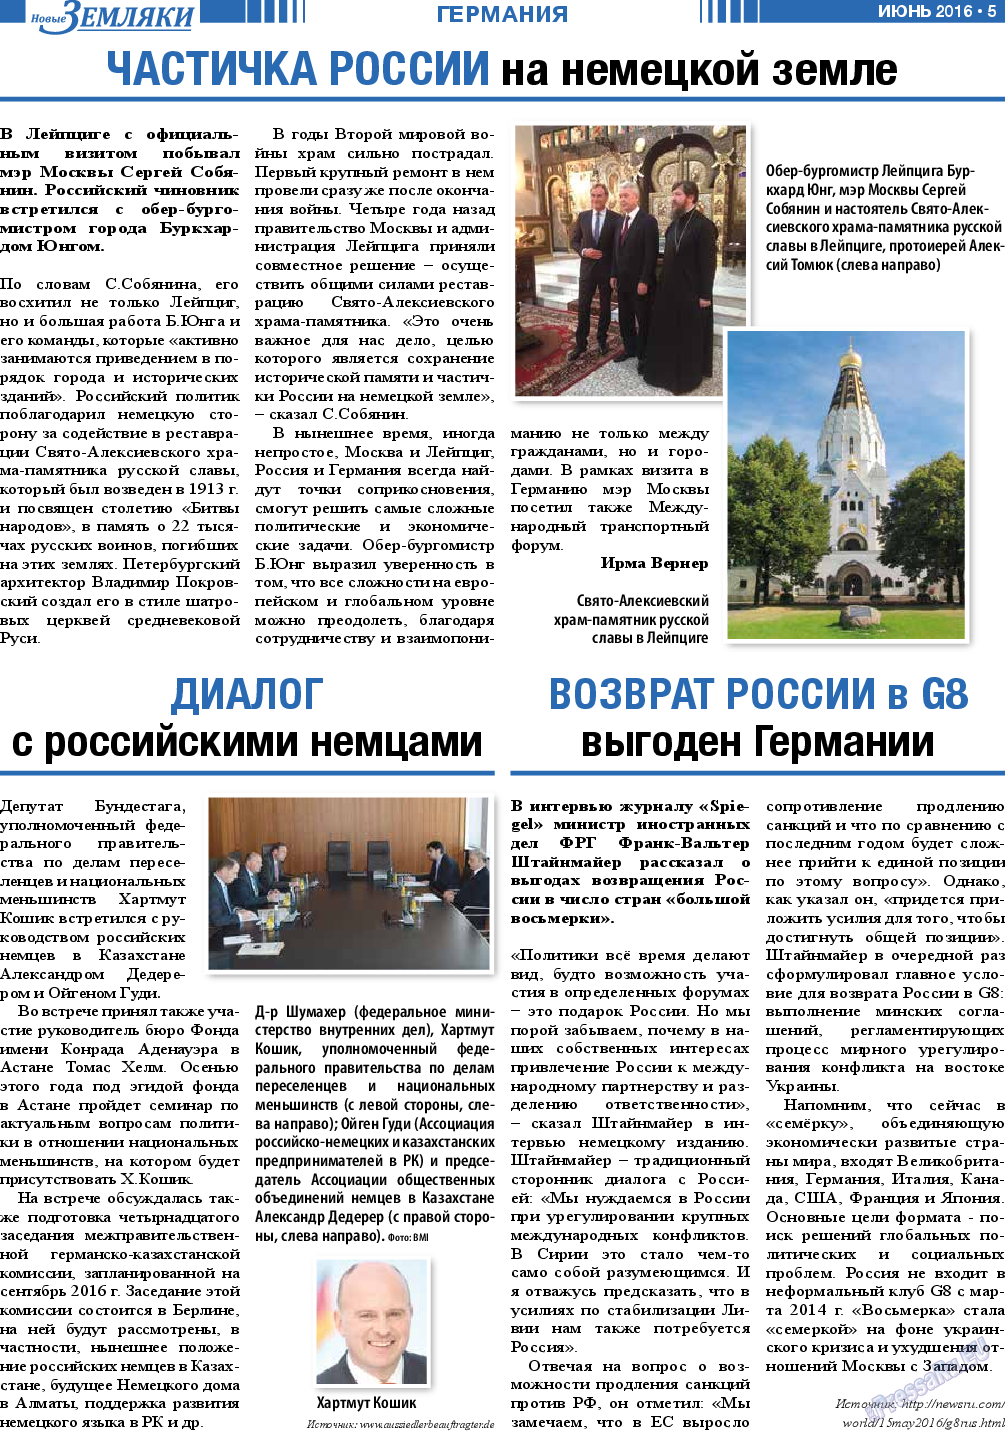 Новые Земляки, газета. 2016 №6 стр.5